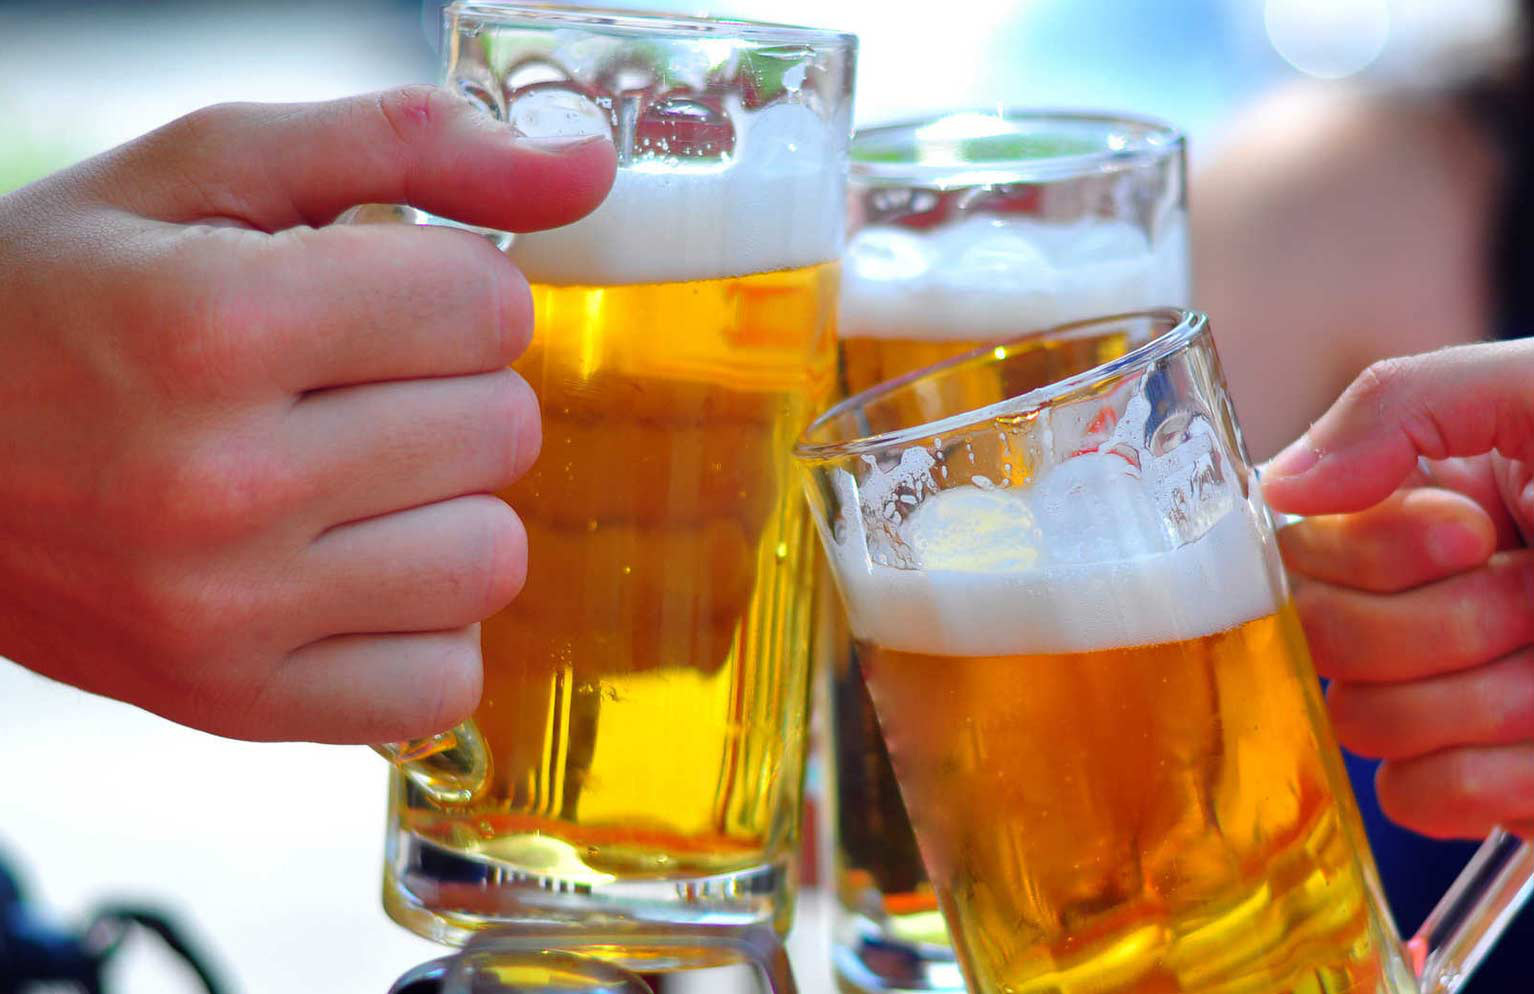 Cấm uống rượu bia là luật pháp cần thiết để duy trì an ninh xã hội. Nếu bạn quan tâm đến chủ đề này, hãy xem bức ảnh liên quan để có thêm thông tin về vi phạm cấm uống rượu bia và hậu quả của hành vi này.